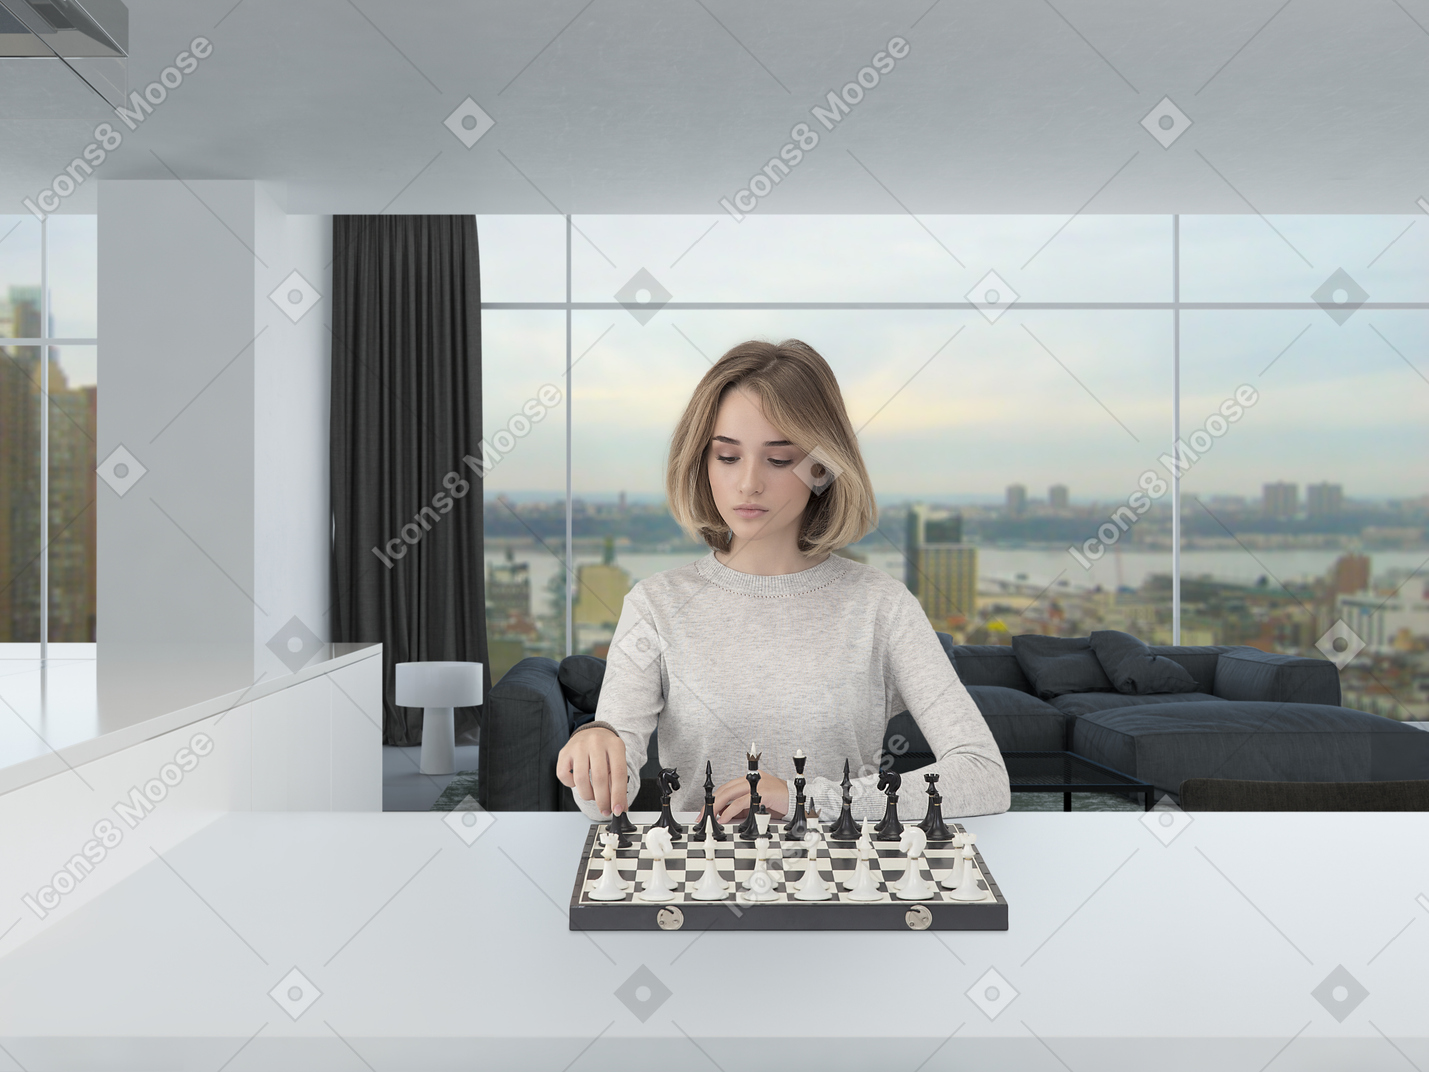 広々としたモダンに見える部屋でチェスをしながら集中して見ているライトグレーのジャンパーで美しい若い女性